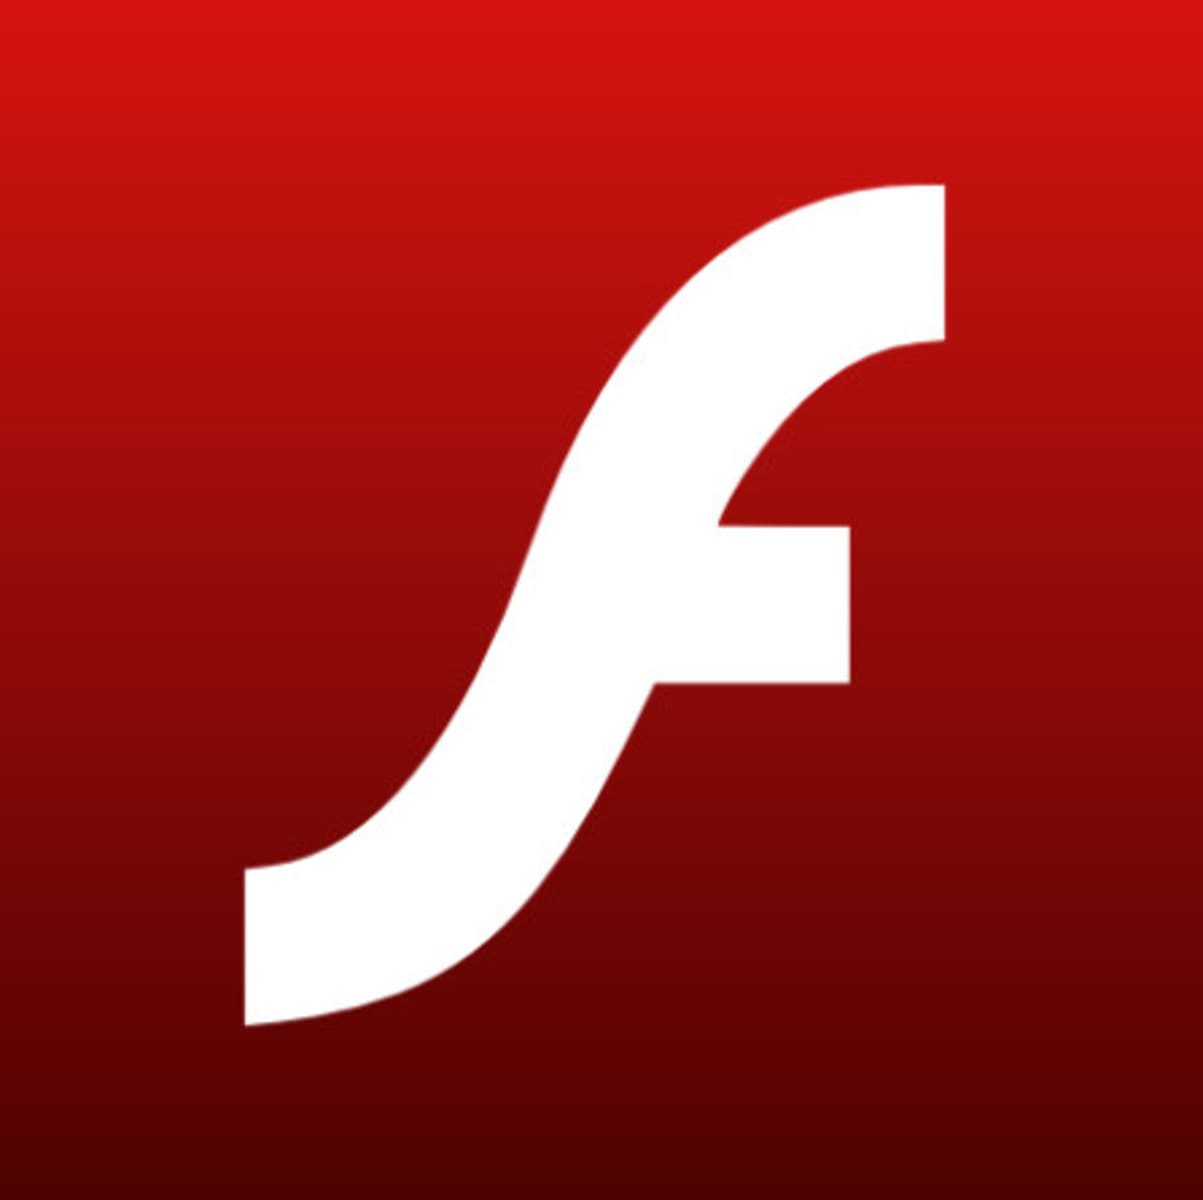 أعلنت Adobe اليوم عن خططها لوقف دعم Flash في نهاية عام 2020